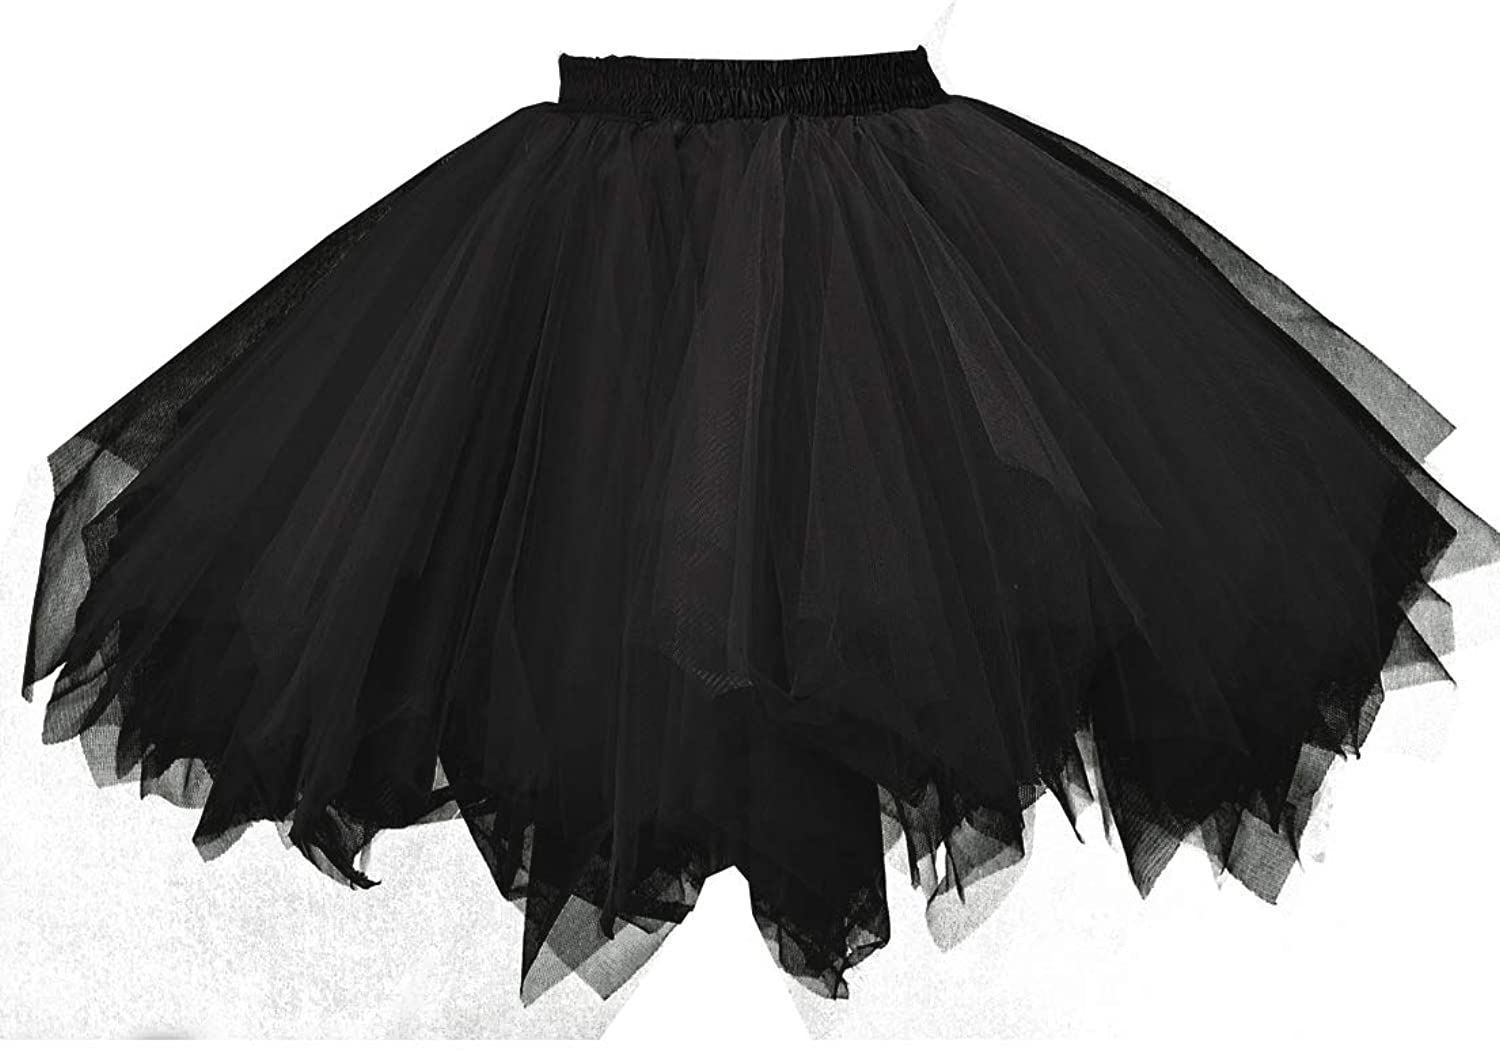 Hot Tulle Skirt 20" knee length Crinoline Petticoat Tutu Dancewear Skirt Slip 